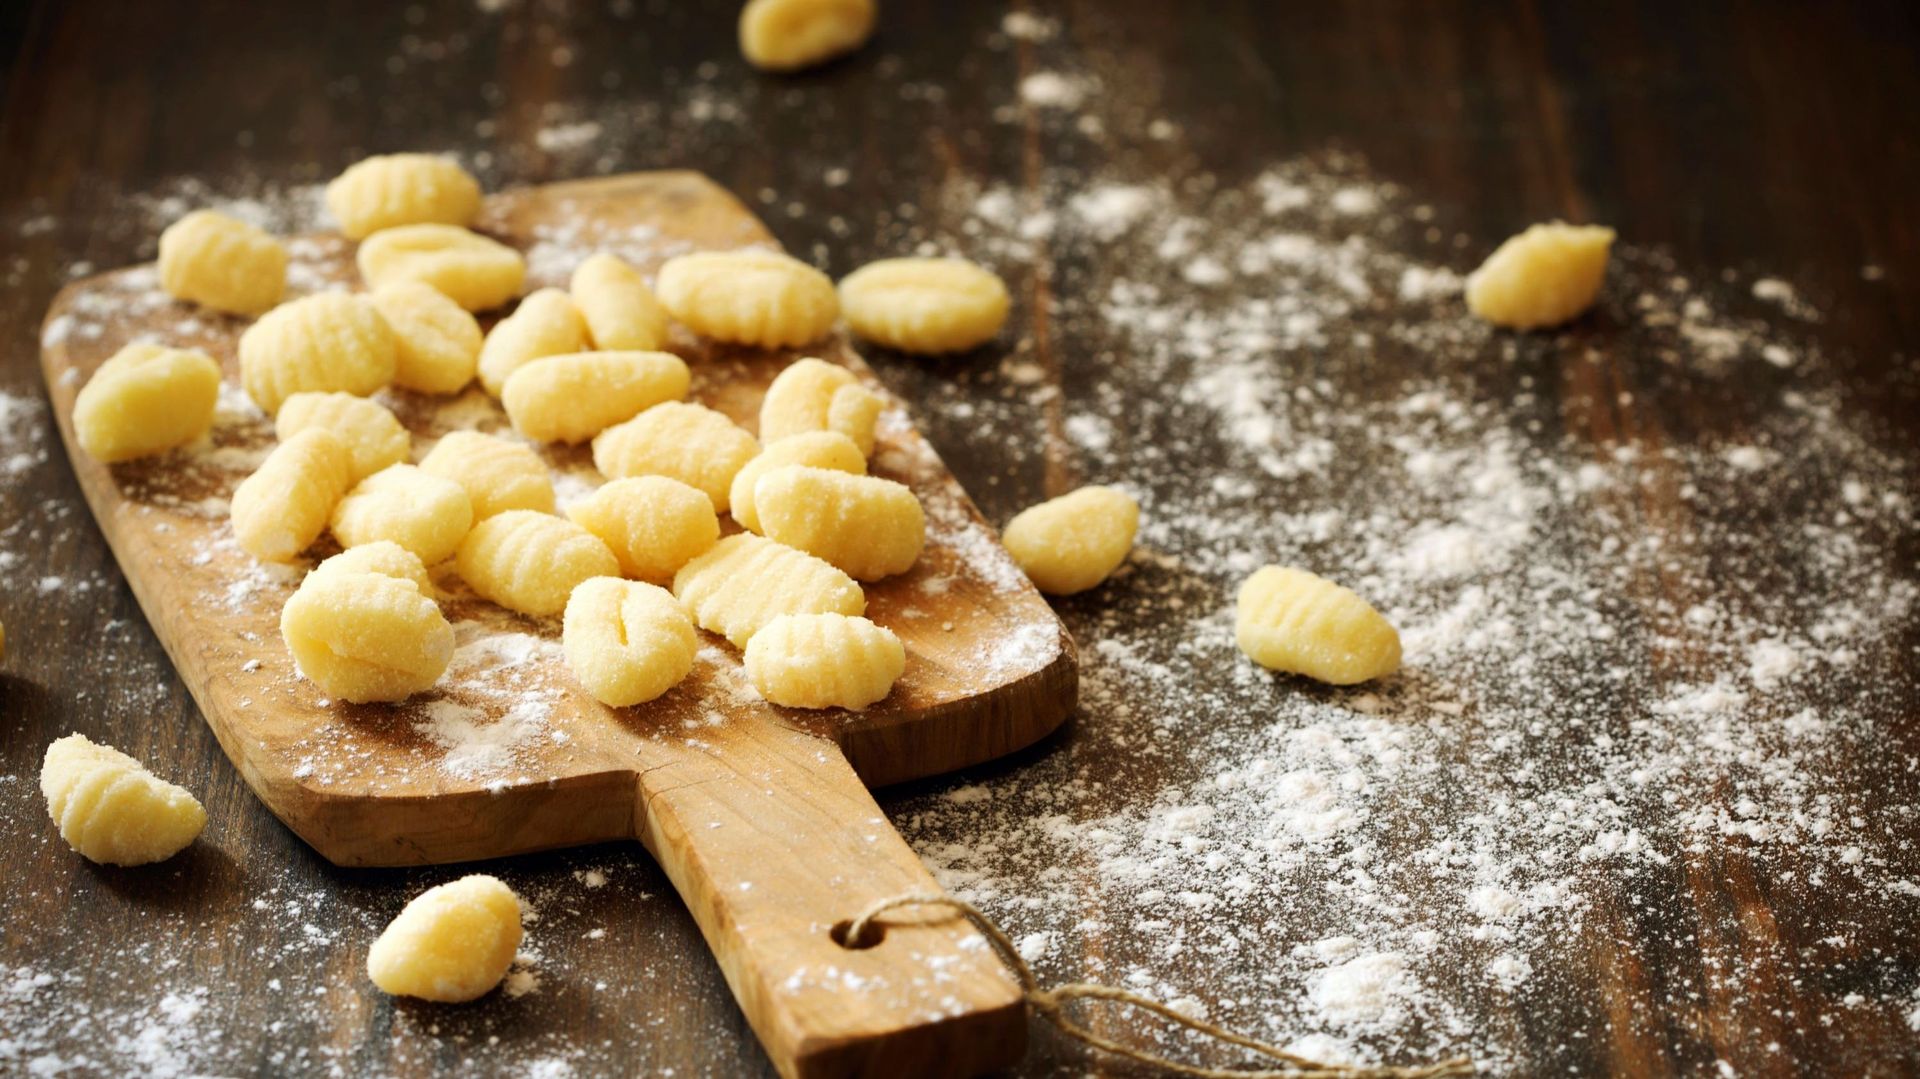 Uncooked homemade potato gnocchi